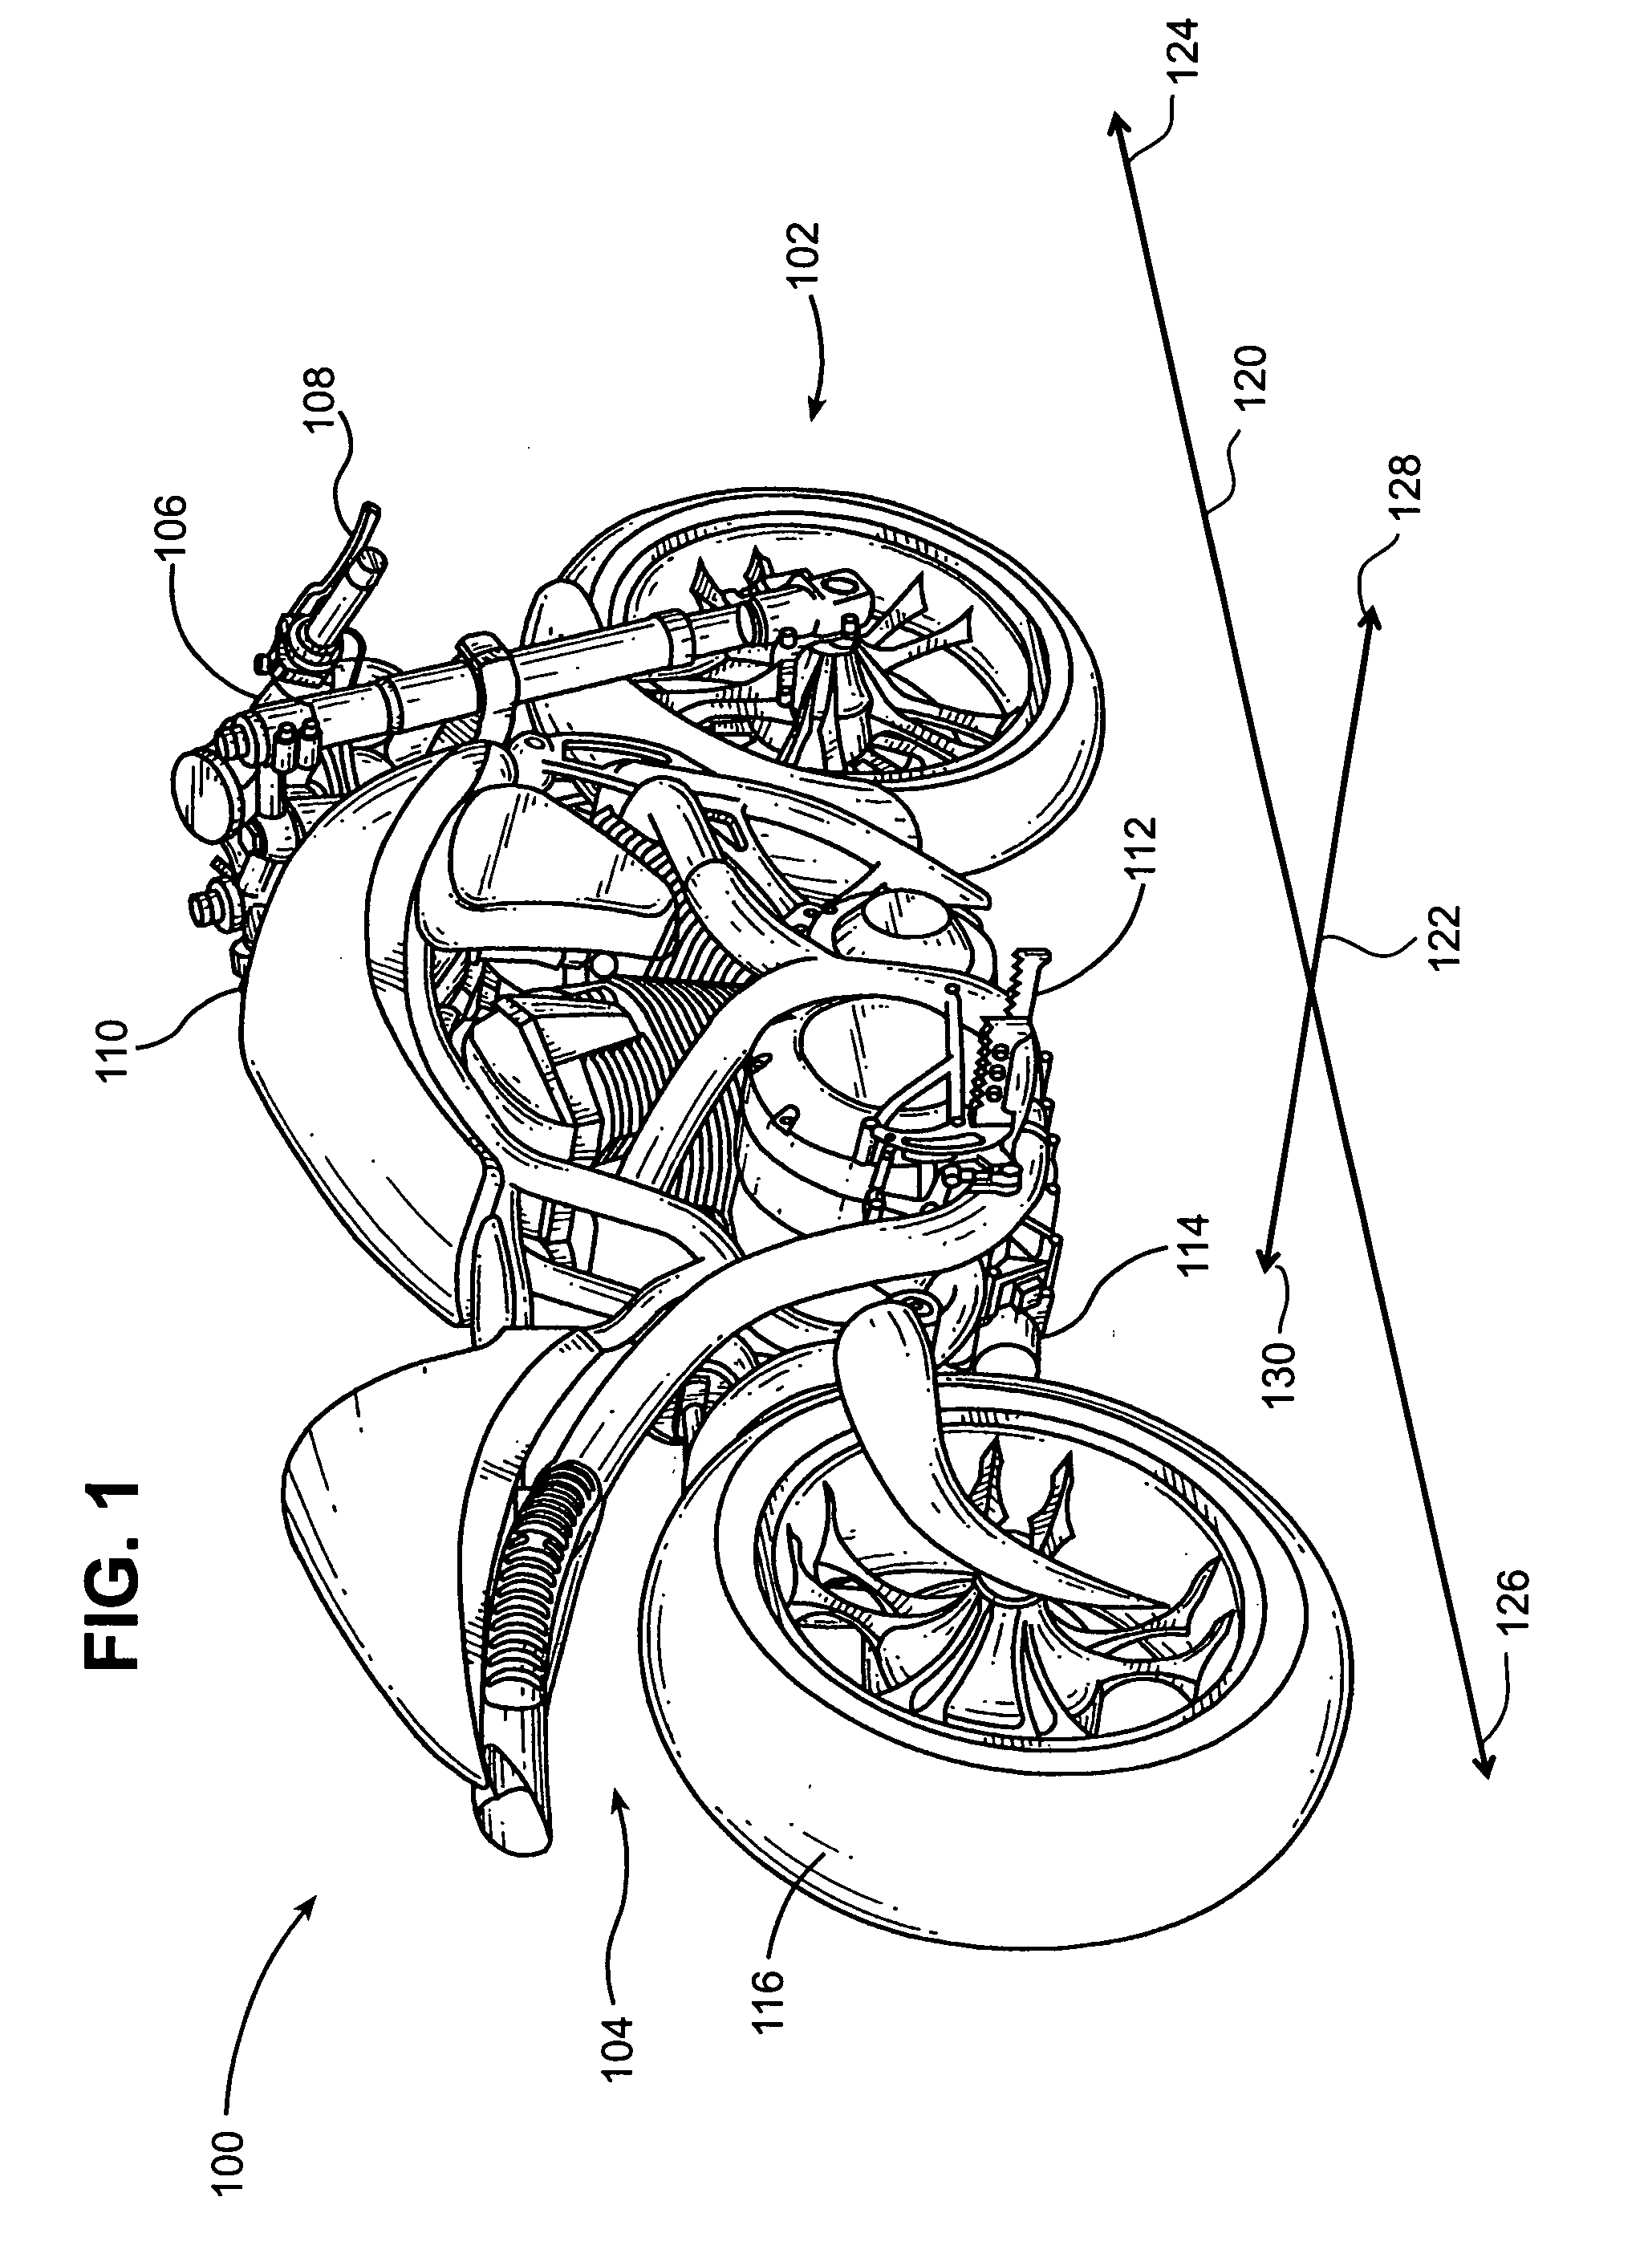 Motorcycle rear disc brake